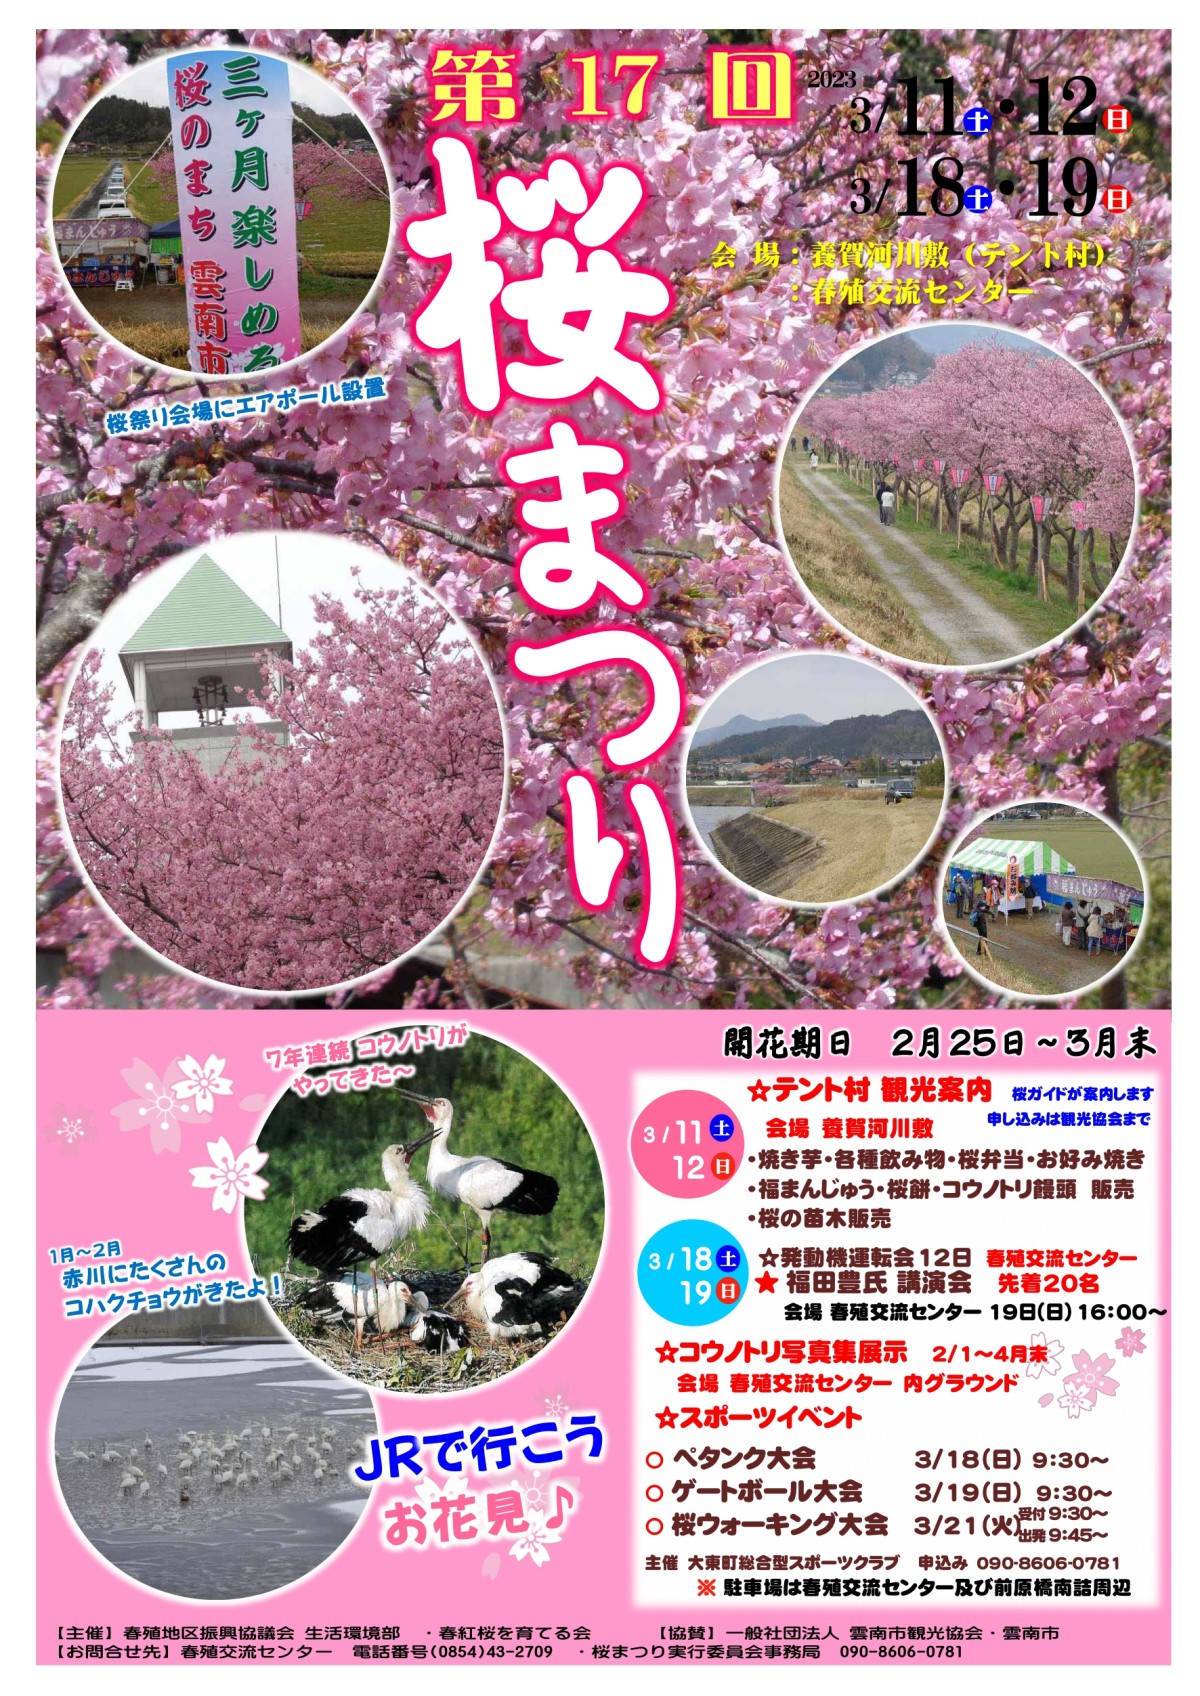 雲南市大東町の赤川河津桜で開催される桜まつりのポスター